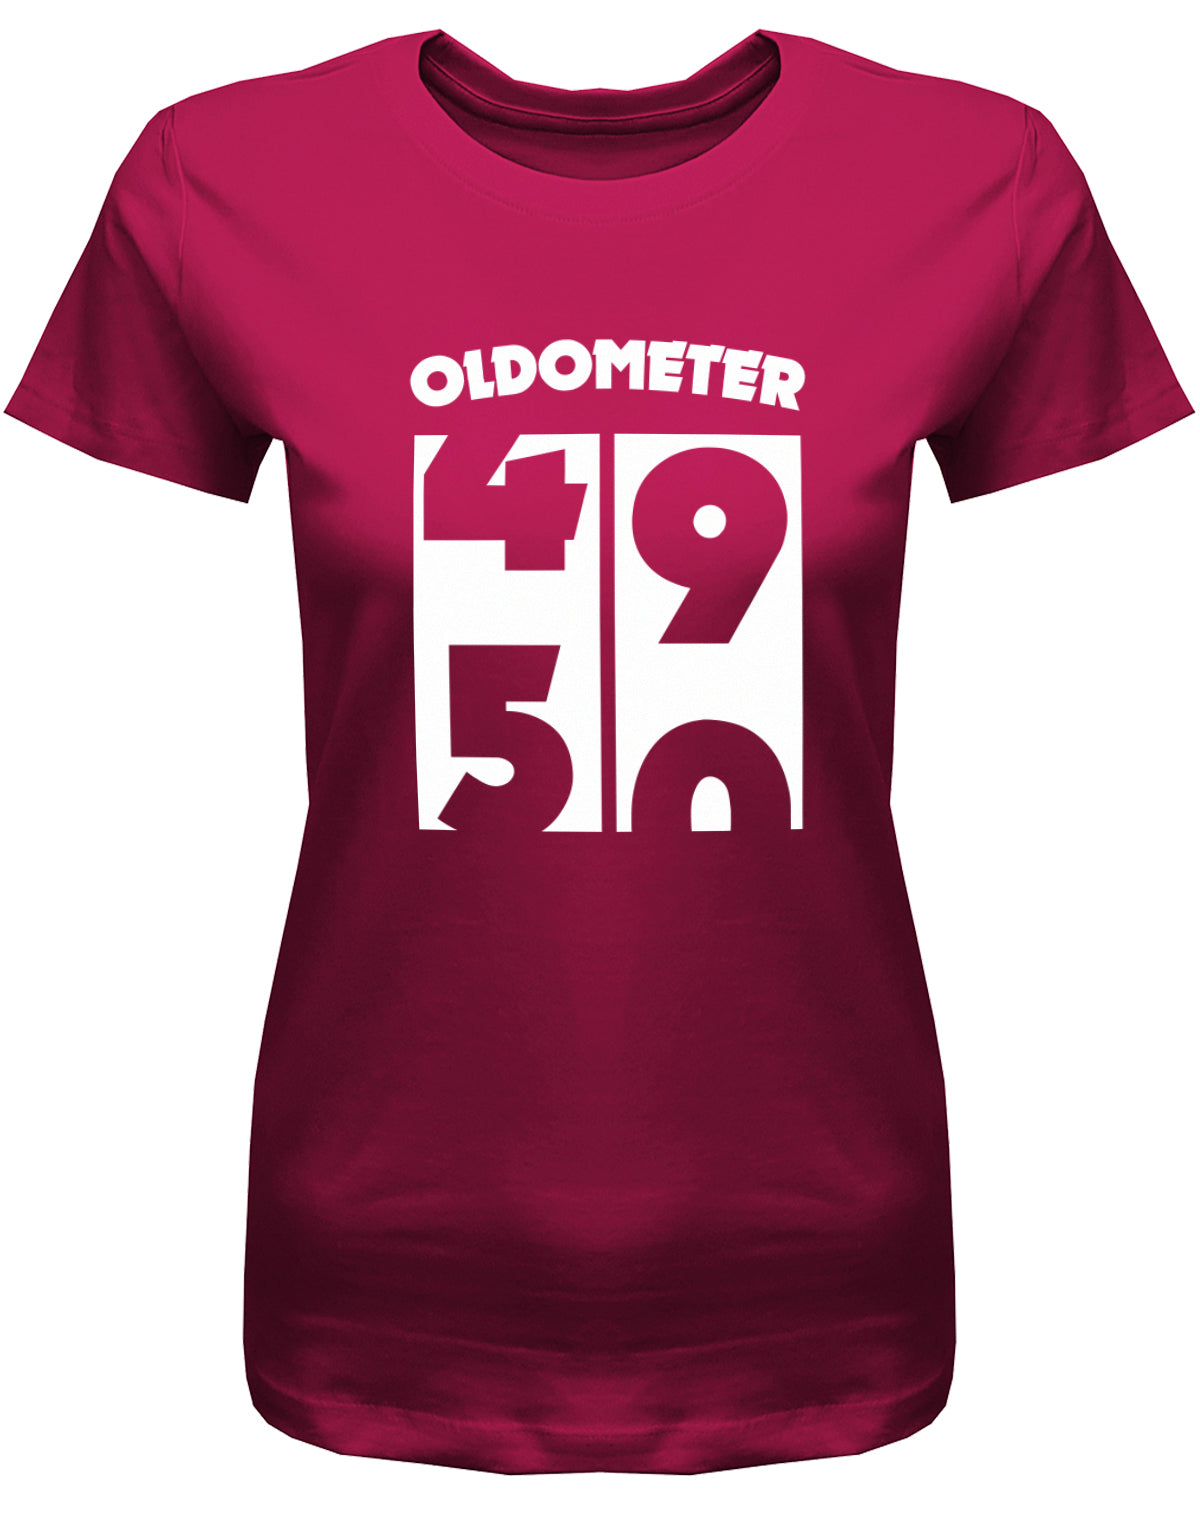 Lustiges T-Shirt zum 50. Geburtstag für die Frau Bedruckt mit Oldometer Wechsel von 49 auf 50 Jahre. Sorbet